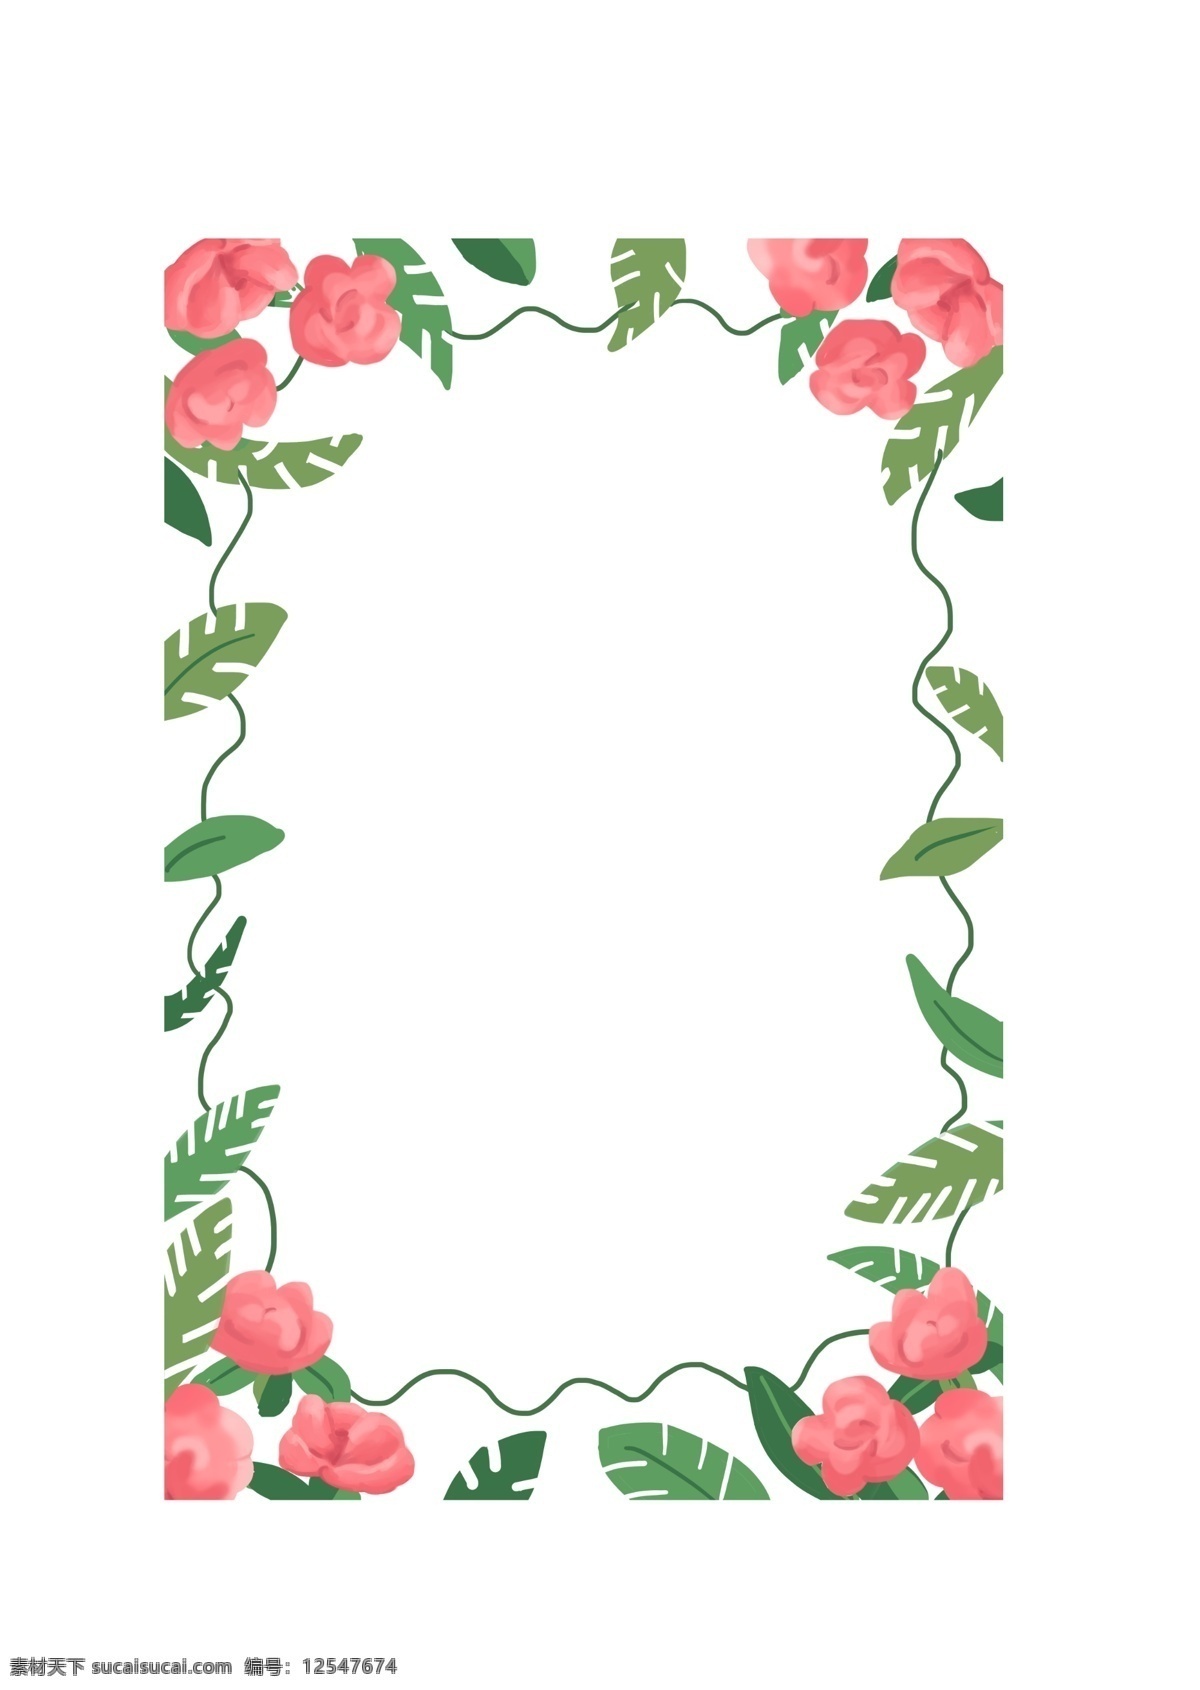 鲜花 植物 装饰 边框 装饰框 框 文字框 玫瑰 蔷薇 绿叶 蔓藤 绿植 叶子 花朵 娇艳 美丽 插图 手绘 红花